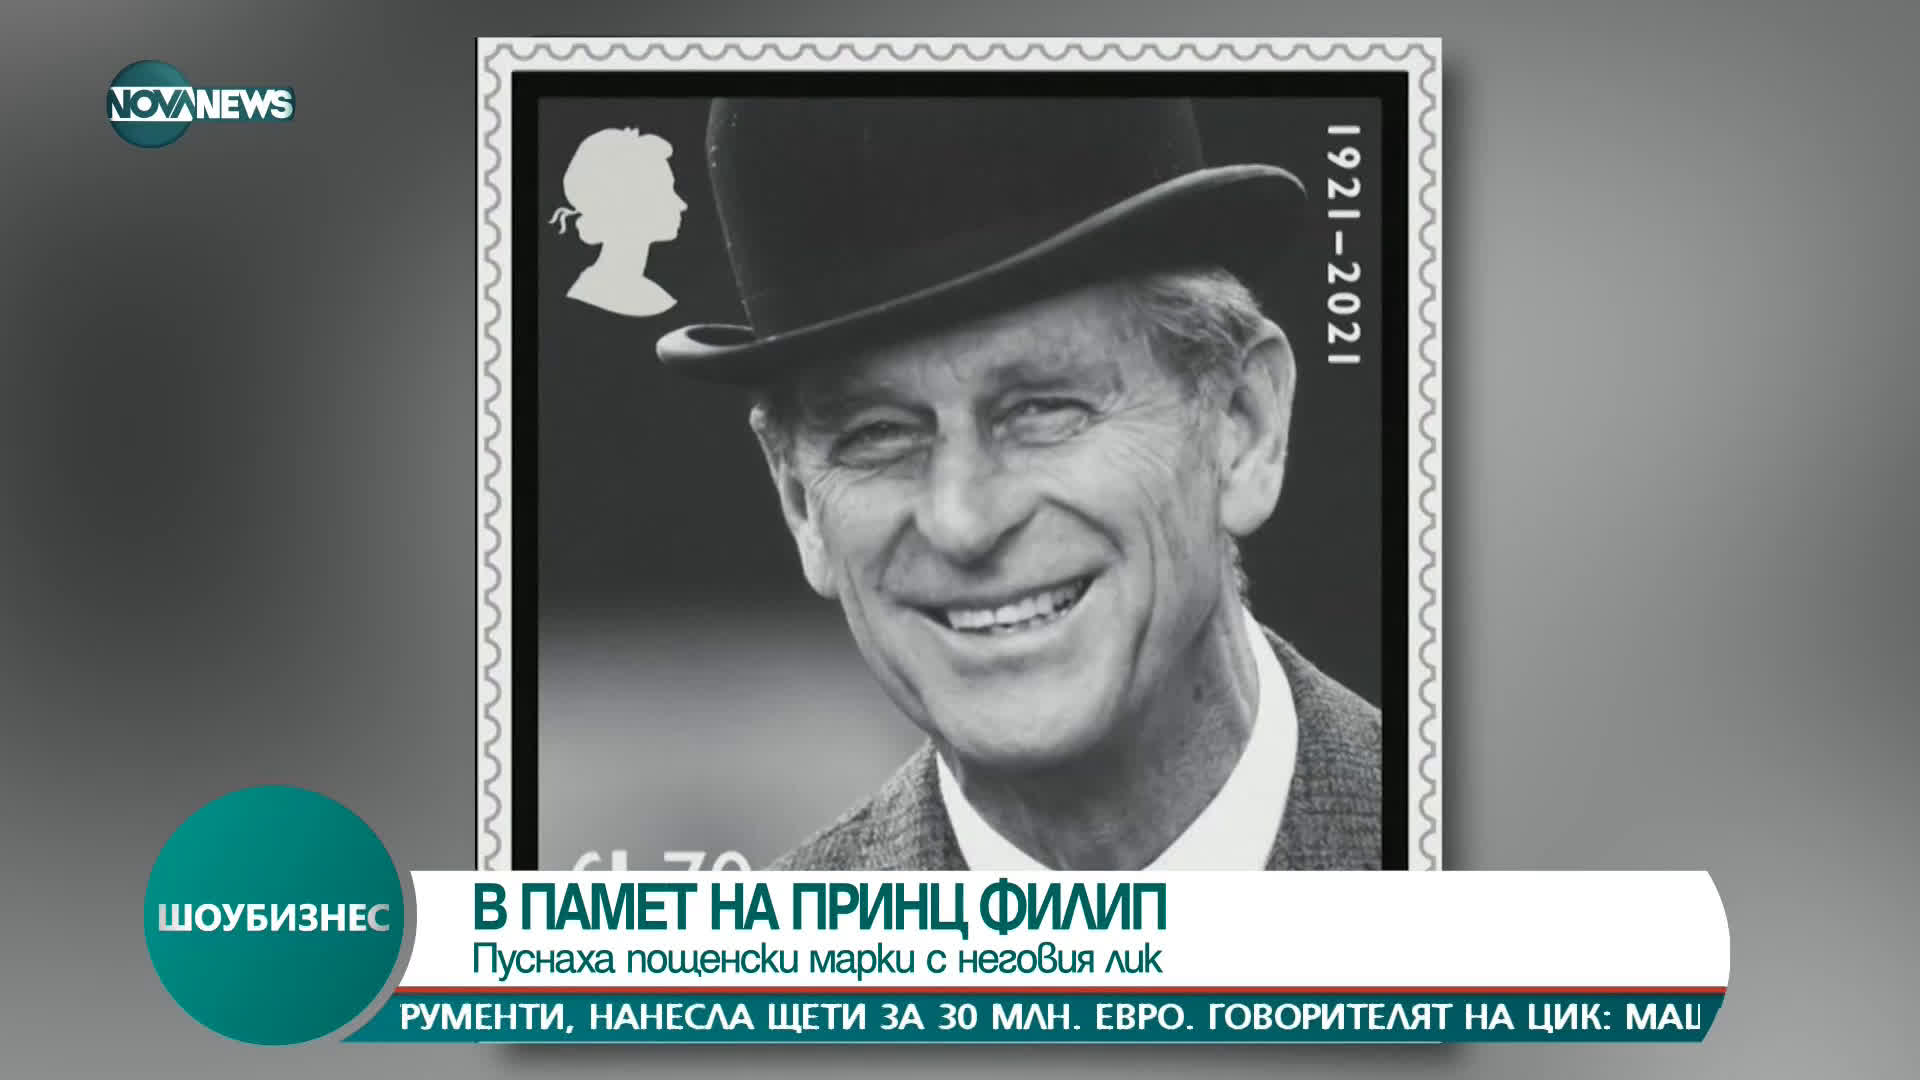 Кралските пощи пускат марки с лика на принц Филип